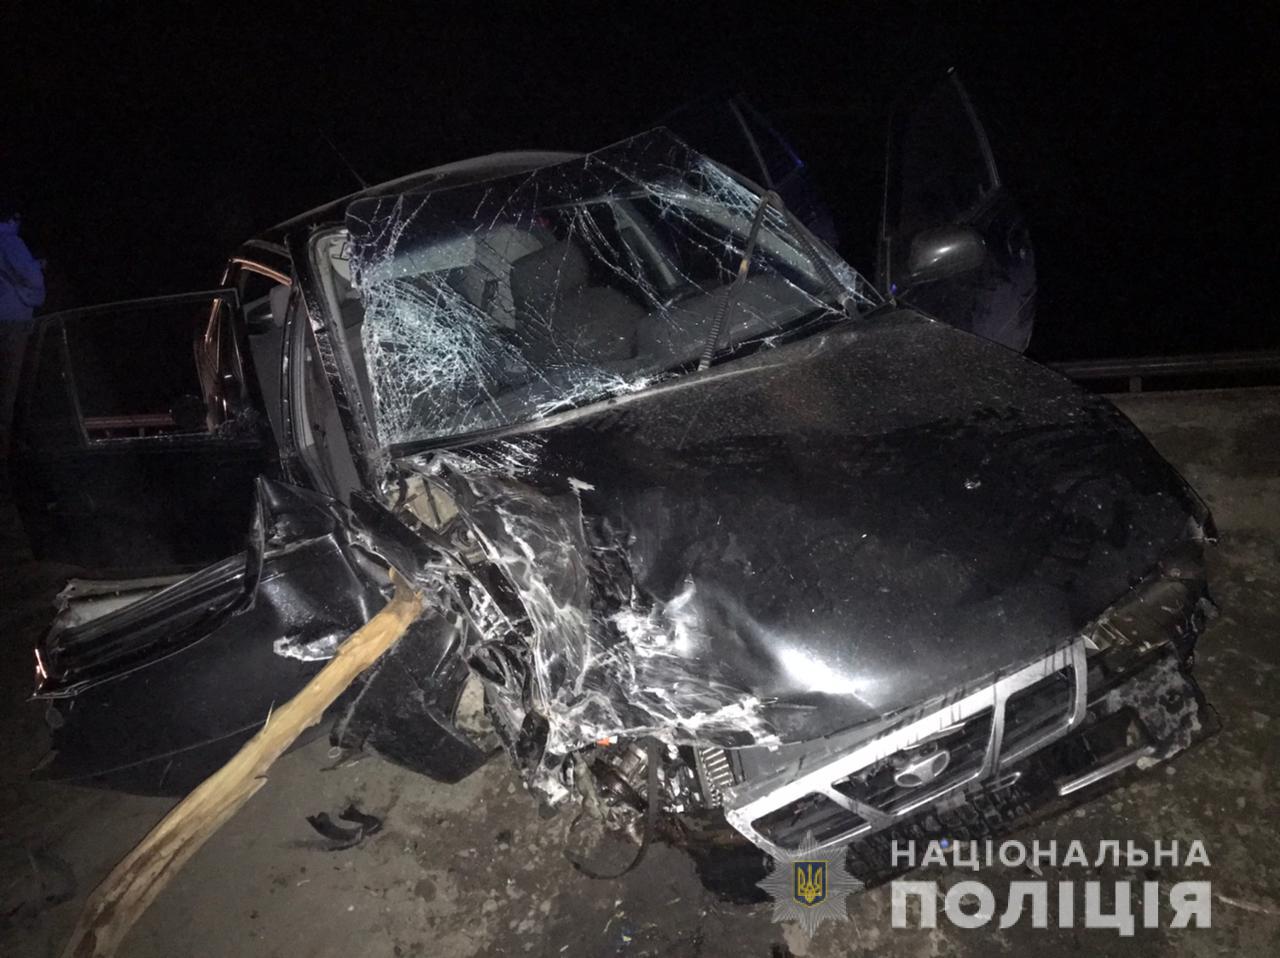 На запорожской трассе произошло смертельное ДТП: авто превратилось в груду металлолома (ФОТО)